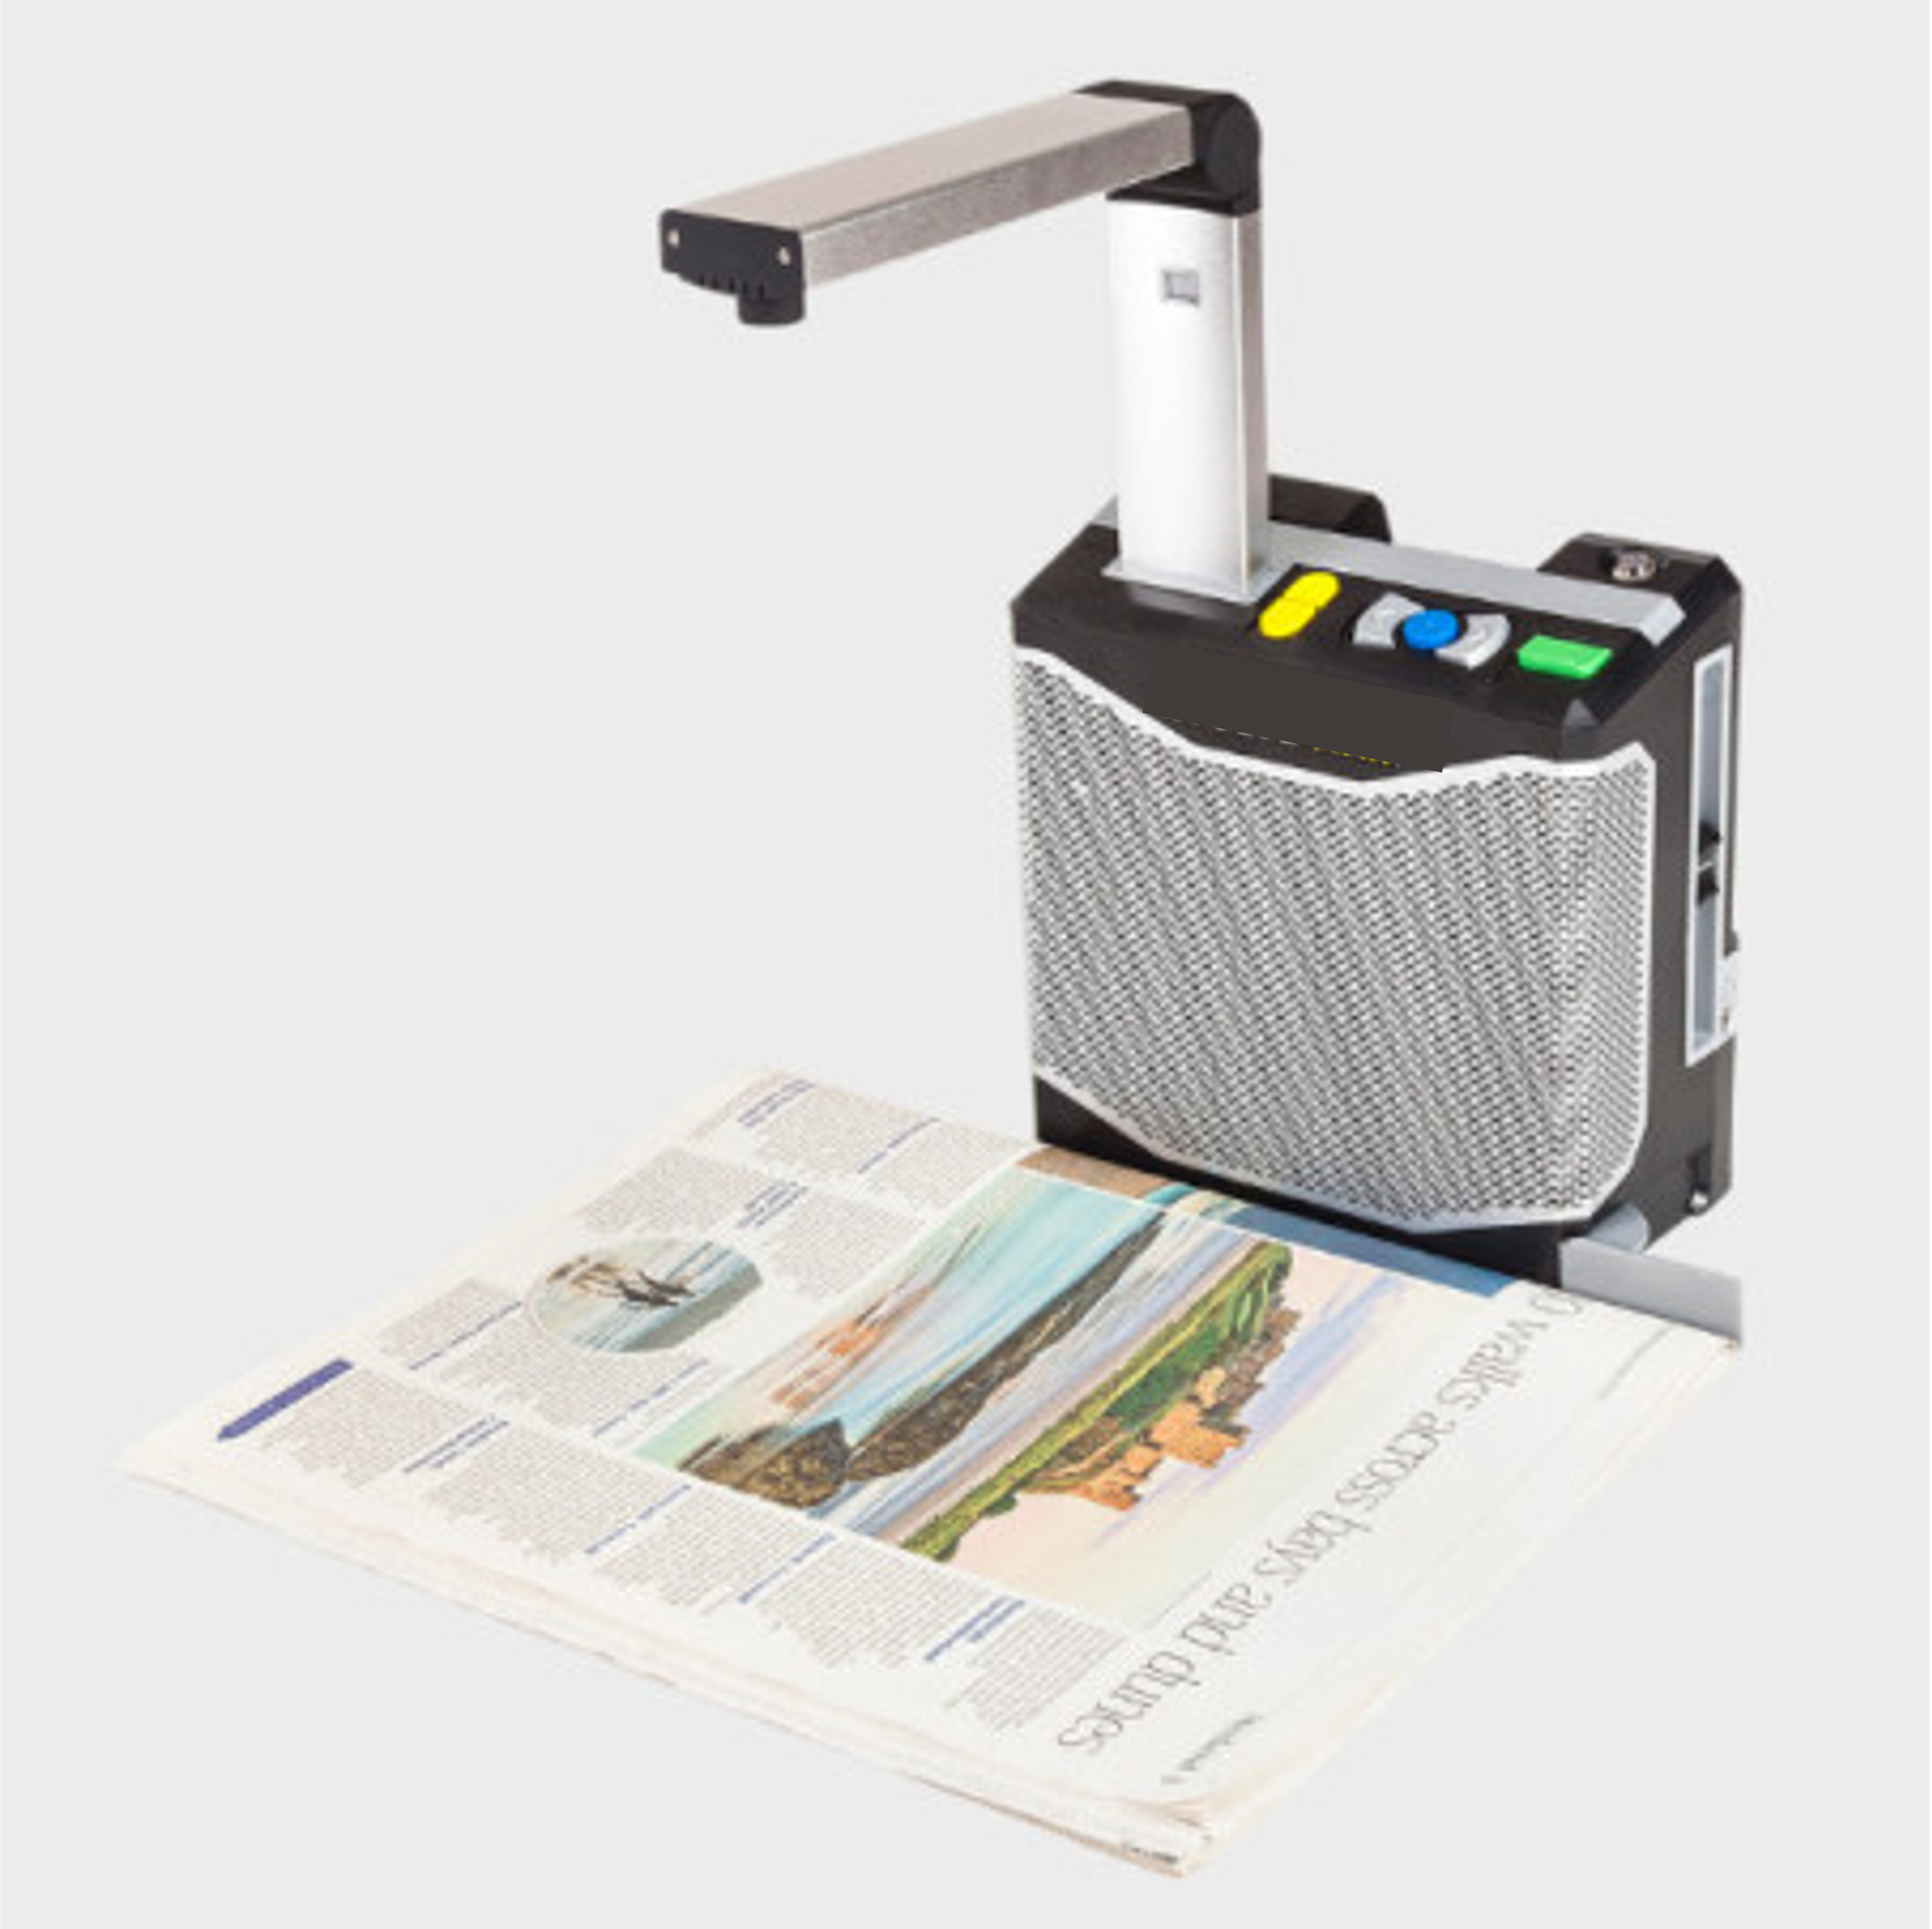 Boitier équipé d'un support articulé plaçant une caméra par-dessus un document placé sur une table. Le boitier est équipé de 6 boutons colorés en relief, haut parleur et prise jack